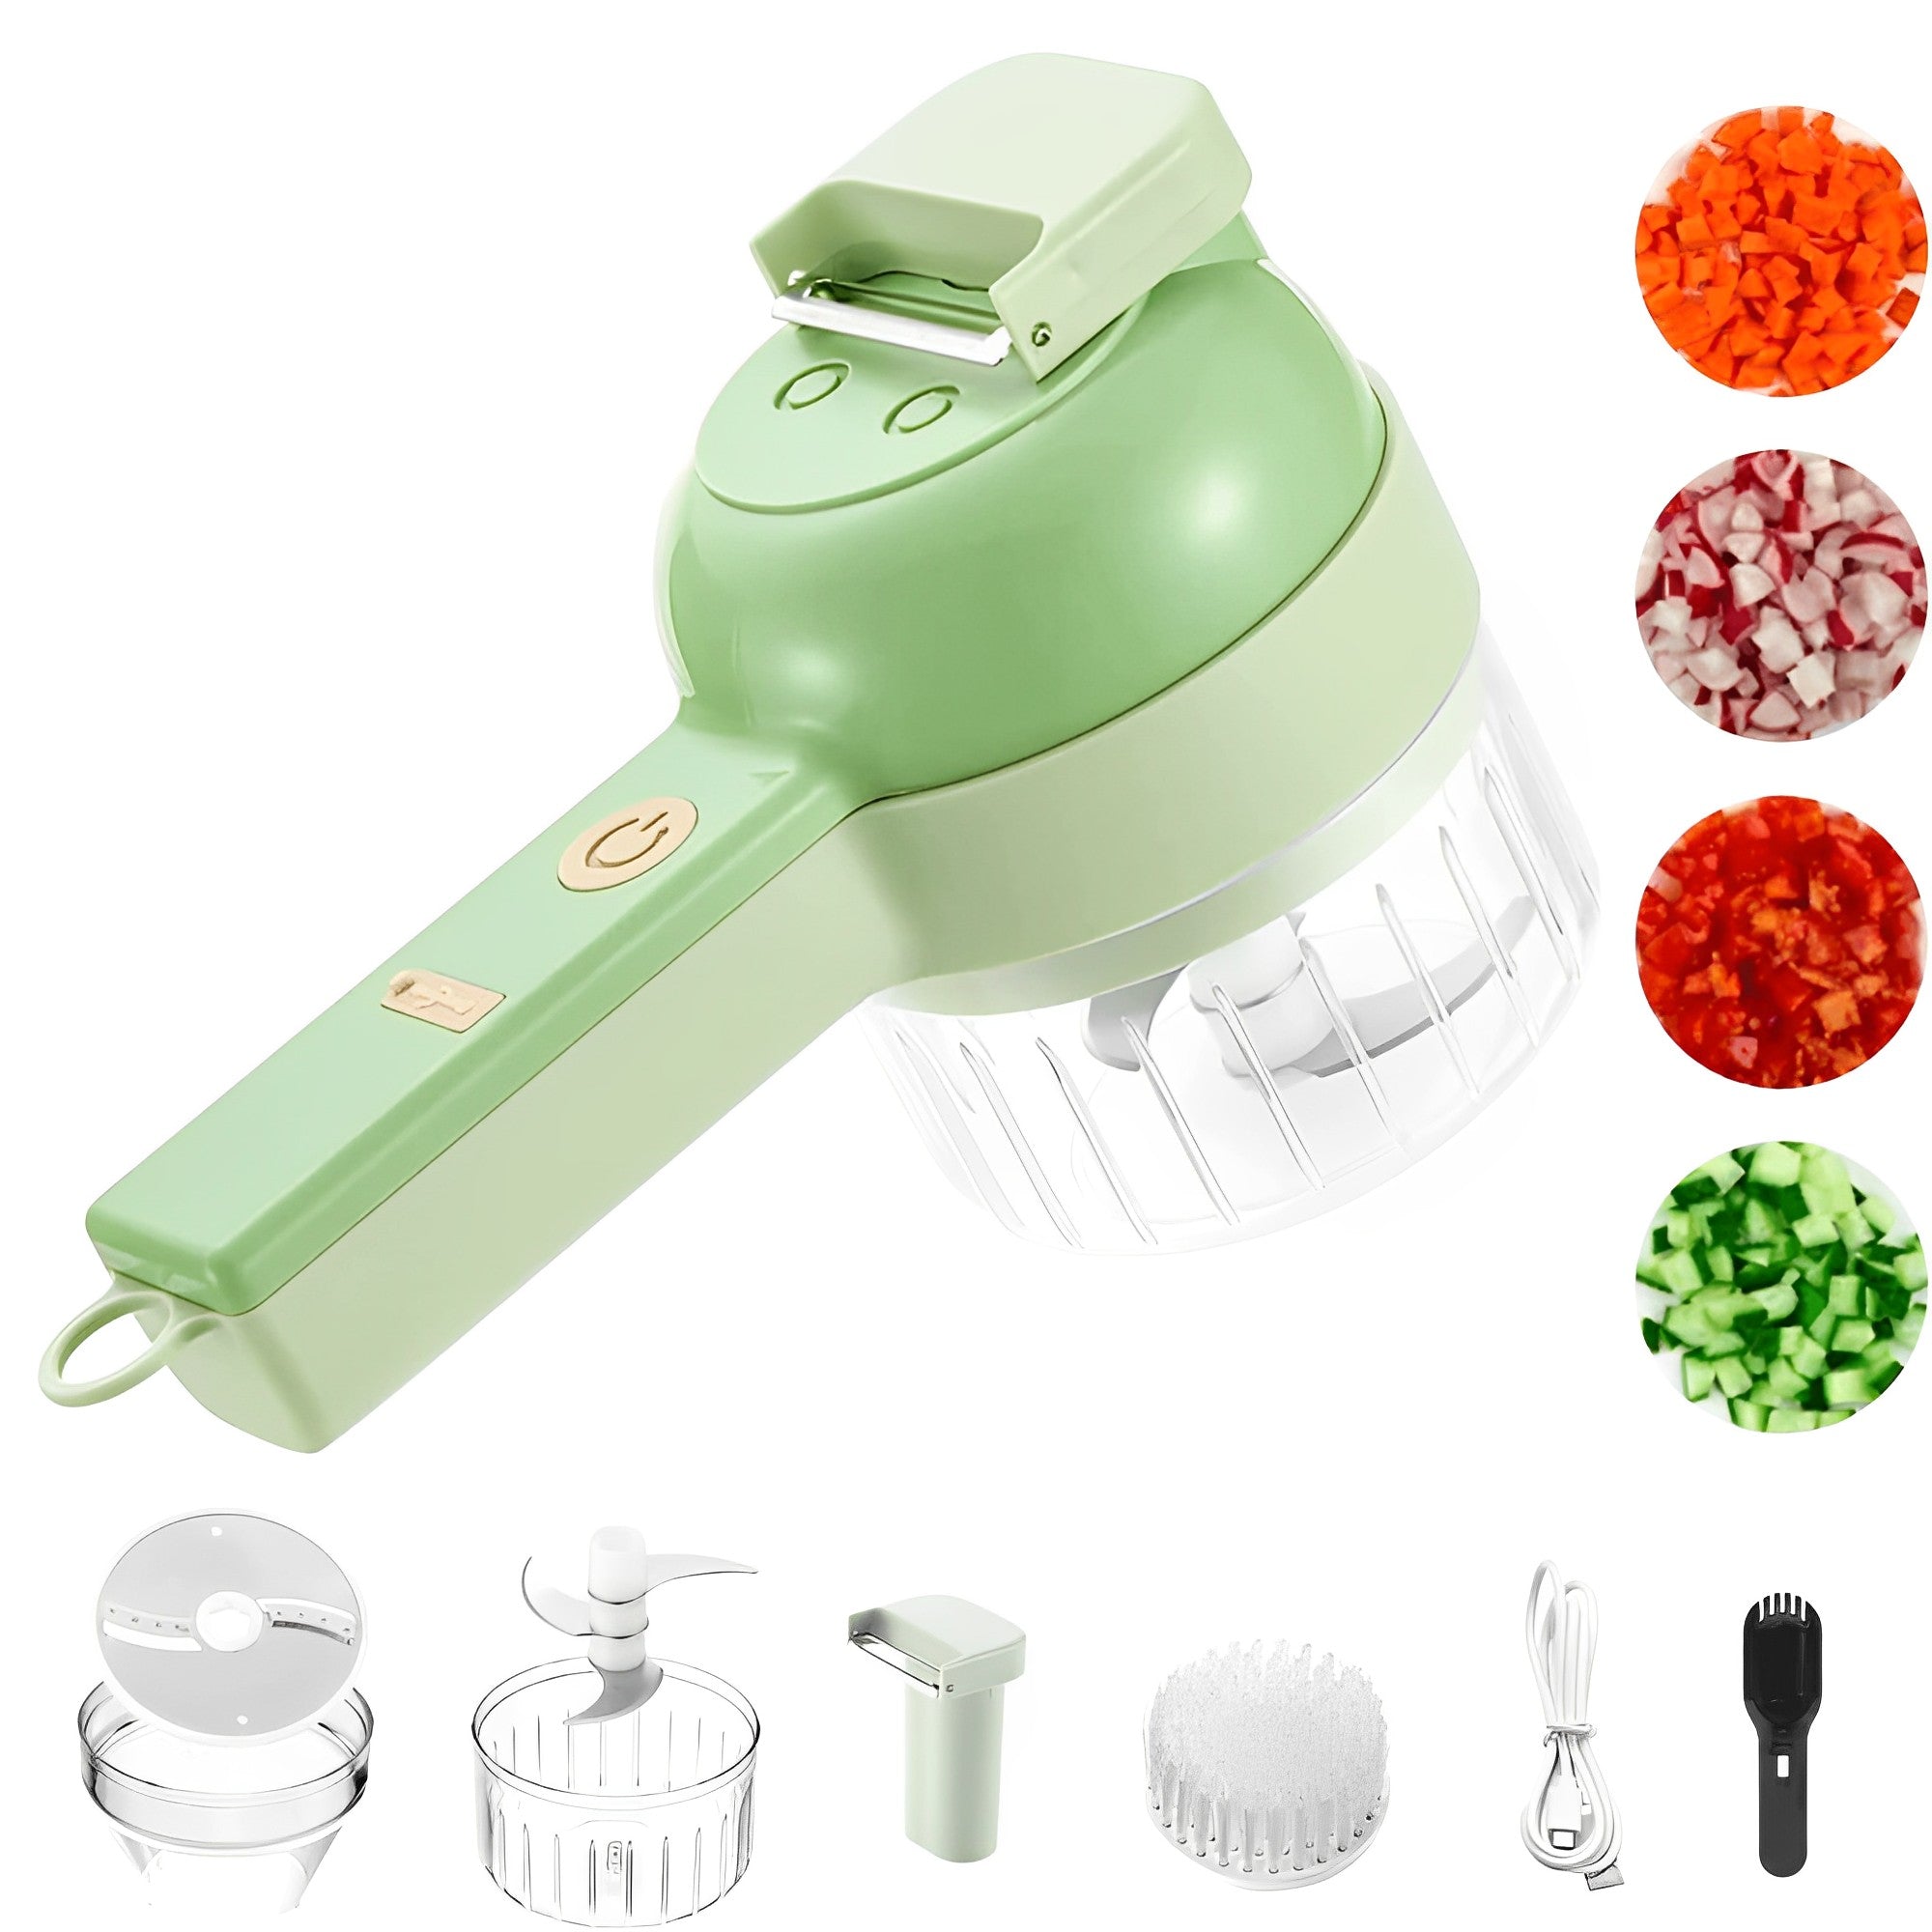 SEASPIRIT Green 4 in 1 Handheld Electric Vegetable Cutter